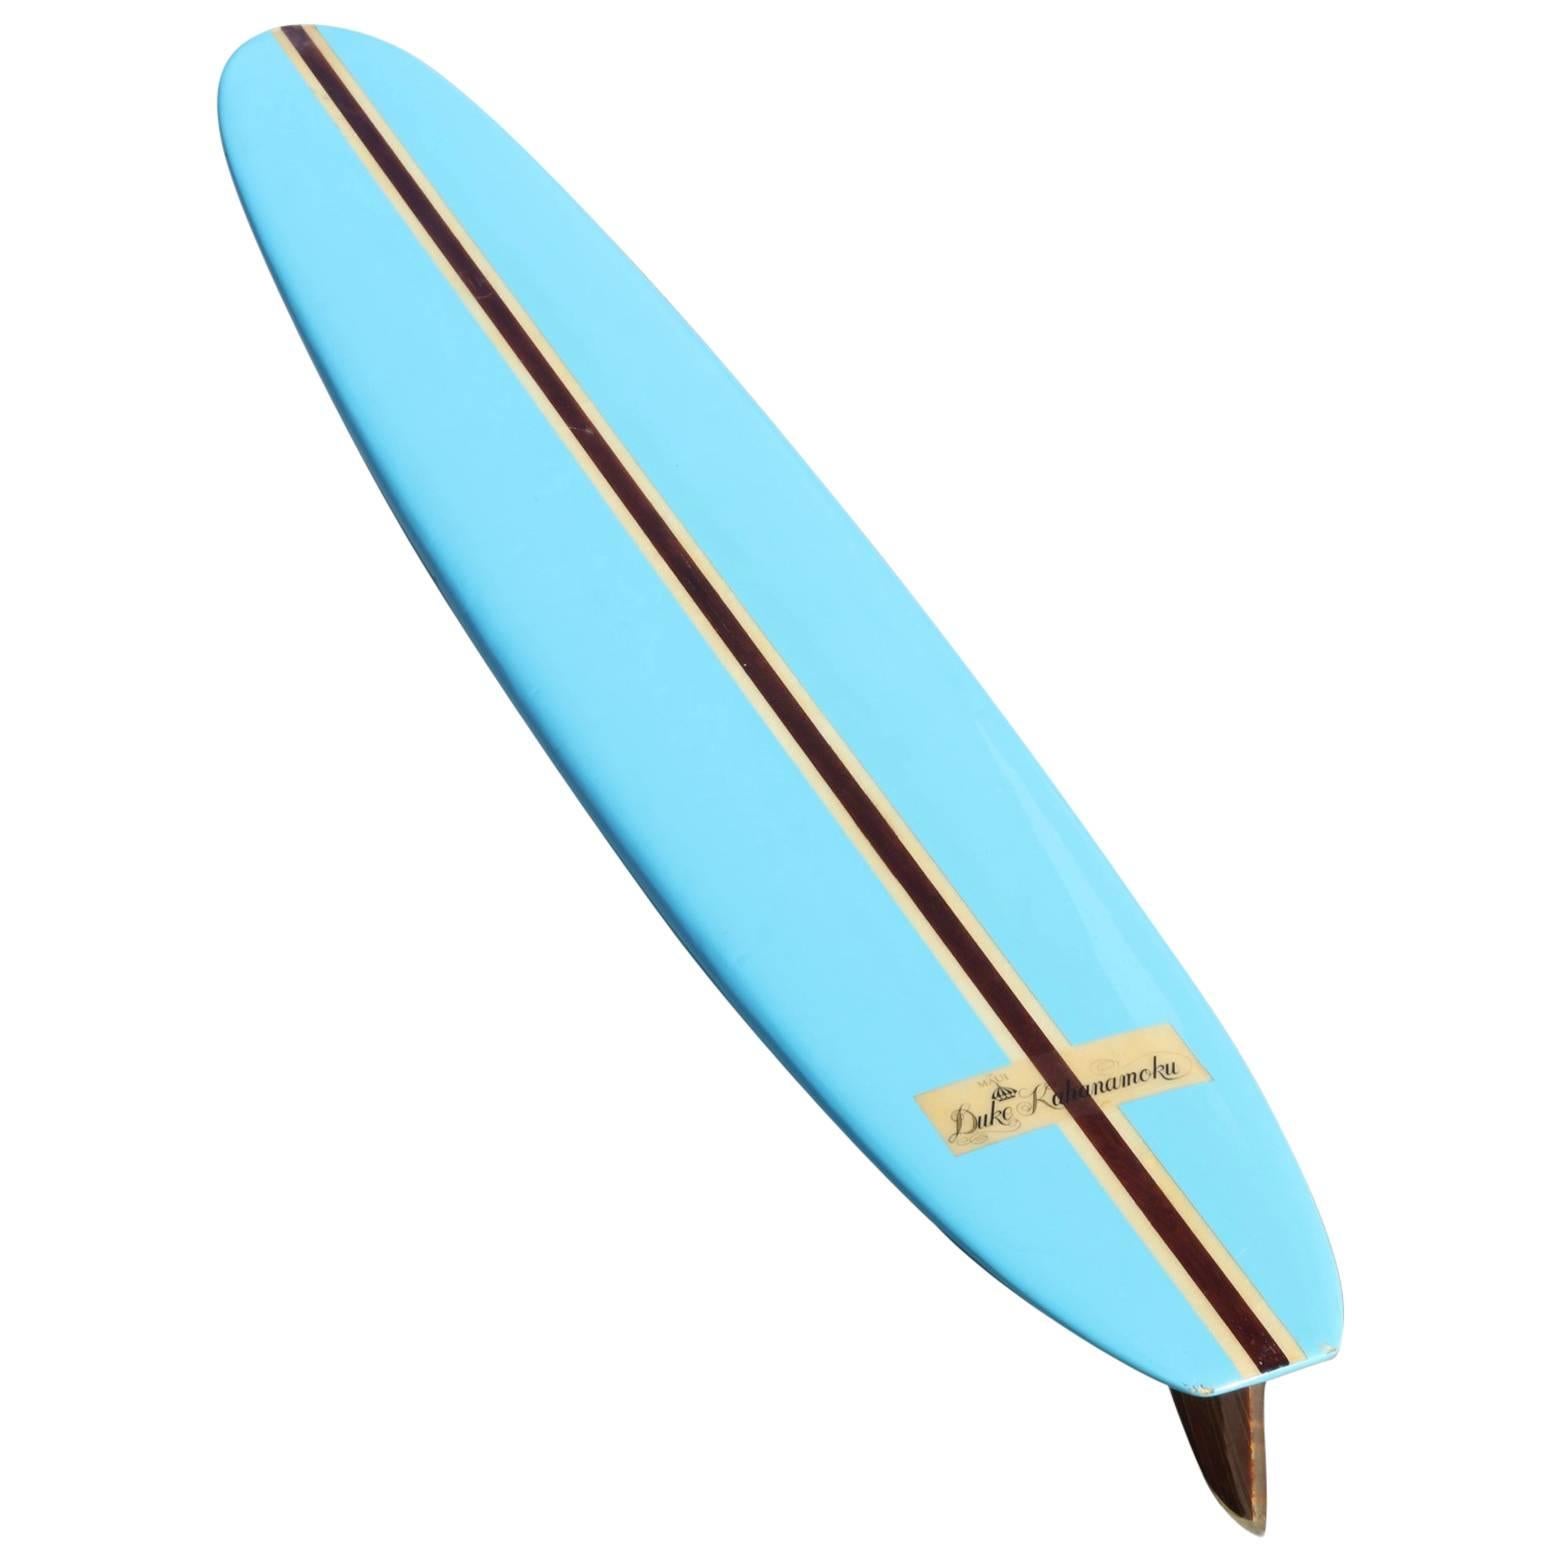 Duke Kahanamoku All Original 1965 Vintage Surfboard, Sky Blue, Redwood Stringer